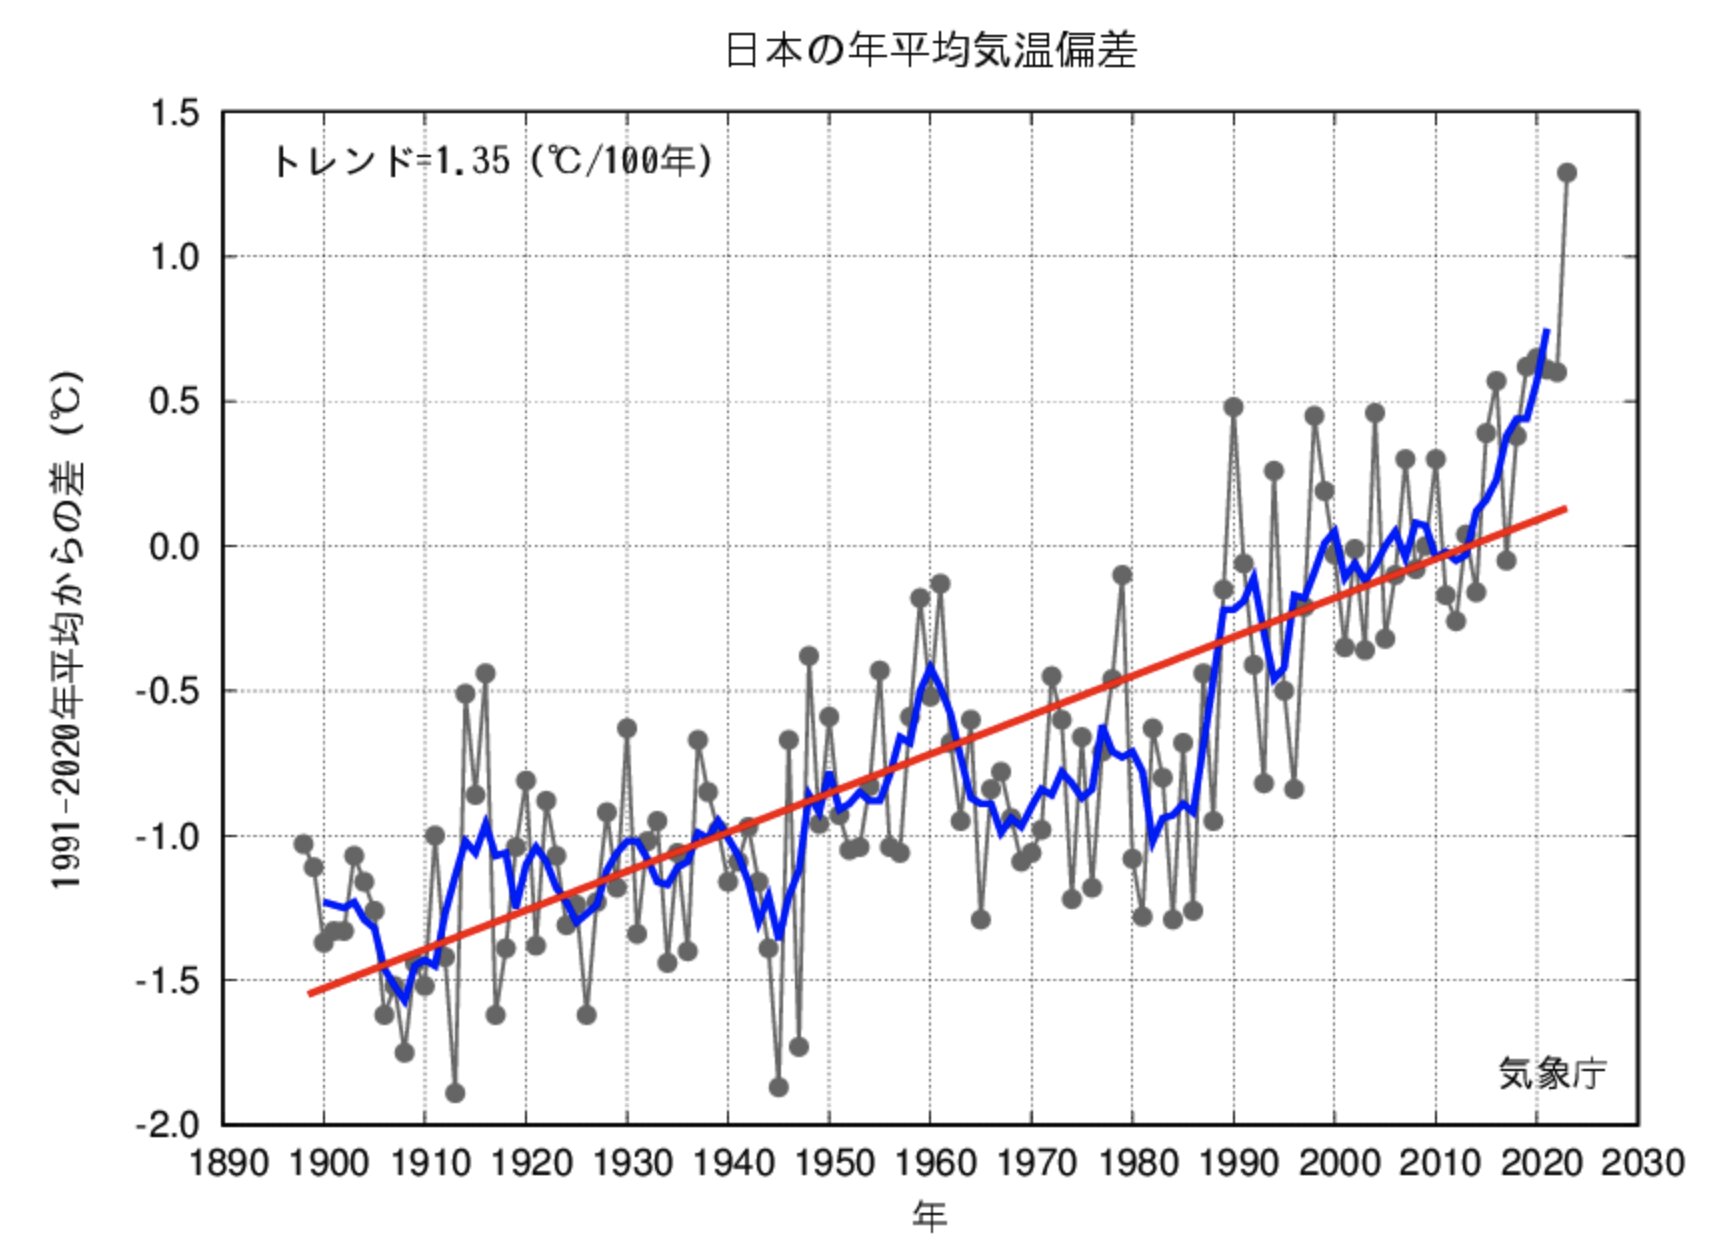 日本の年平均気温の変化。グレーの実線は平均気温の基準値（30年平均値）からの偏差、青線は偏差の5年移動平均（前後データの平均）値、赤線は長期変化の傾向。気象庁のHPより